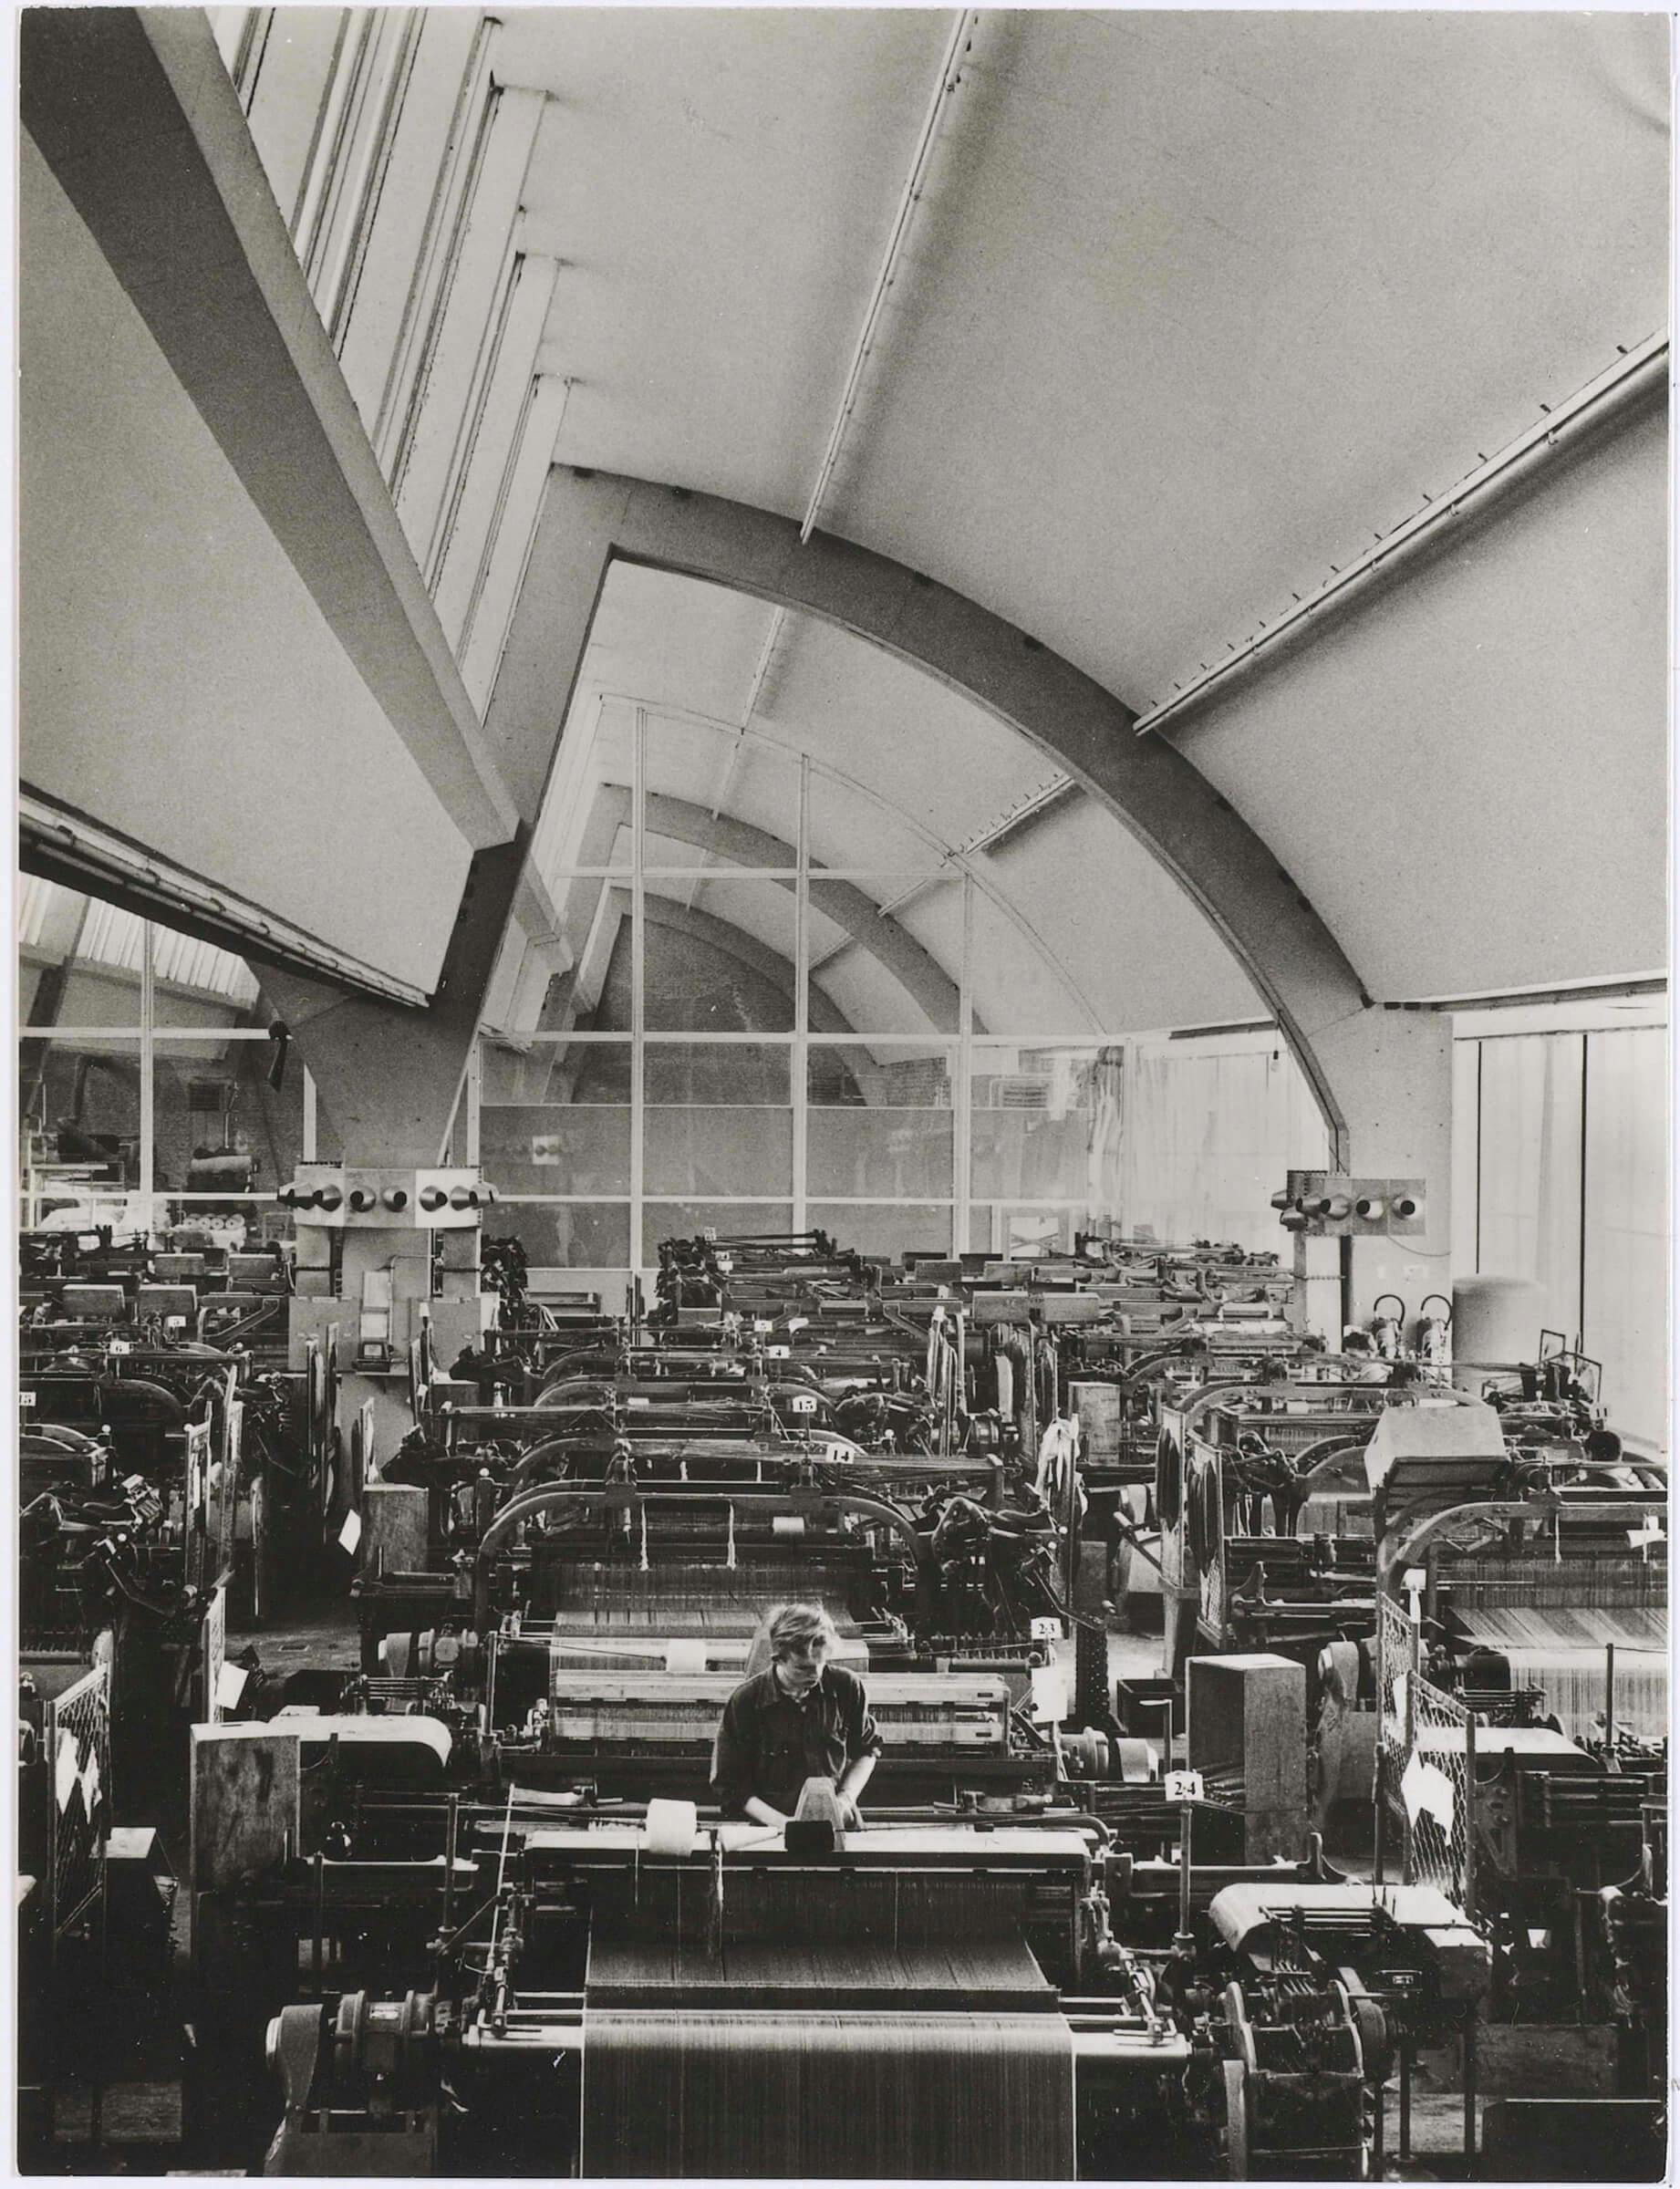 Interieur weverij van de nieuwe fabriek van Weverij van De Ploeg, Bergeijk, 1960-1980. Fotograaf onbekend. Collectie Textielmuseum. 